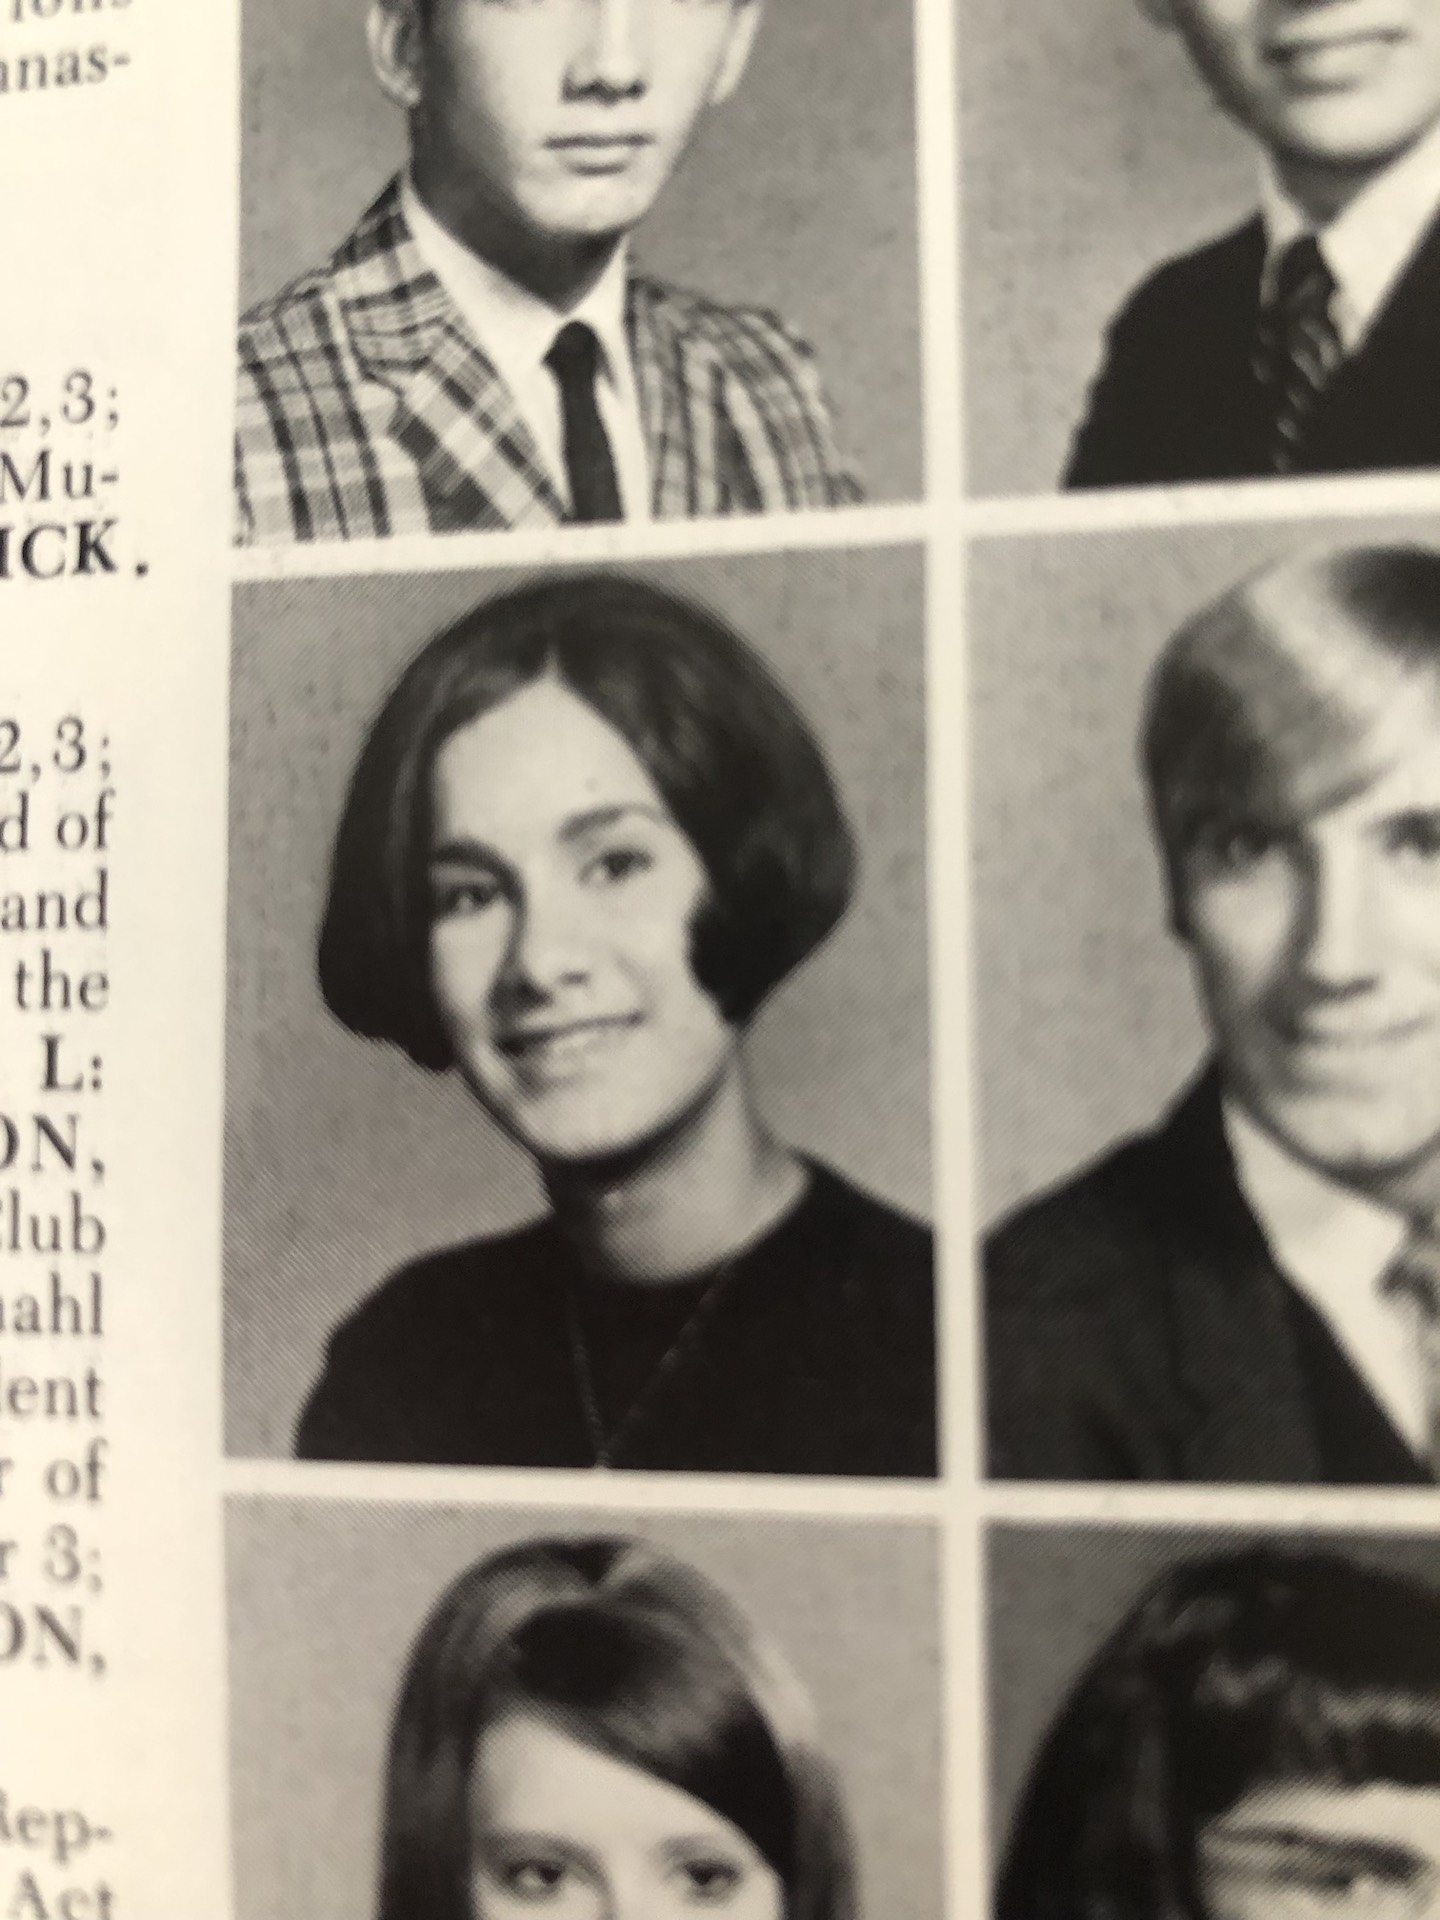 A yearbook portrait of Cheryl Qamar as a high school senior, 1968. Photo courtesy of Cheryl Qamar.